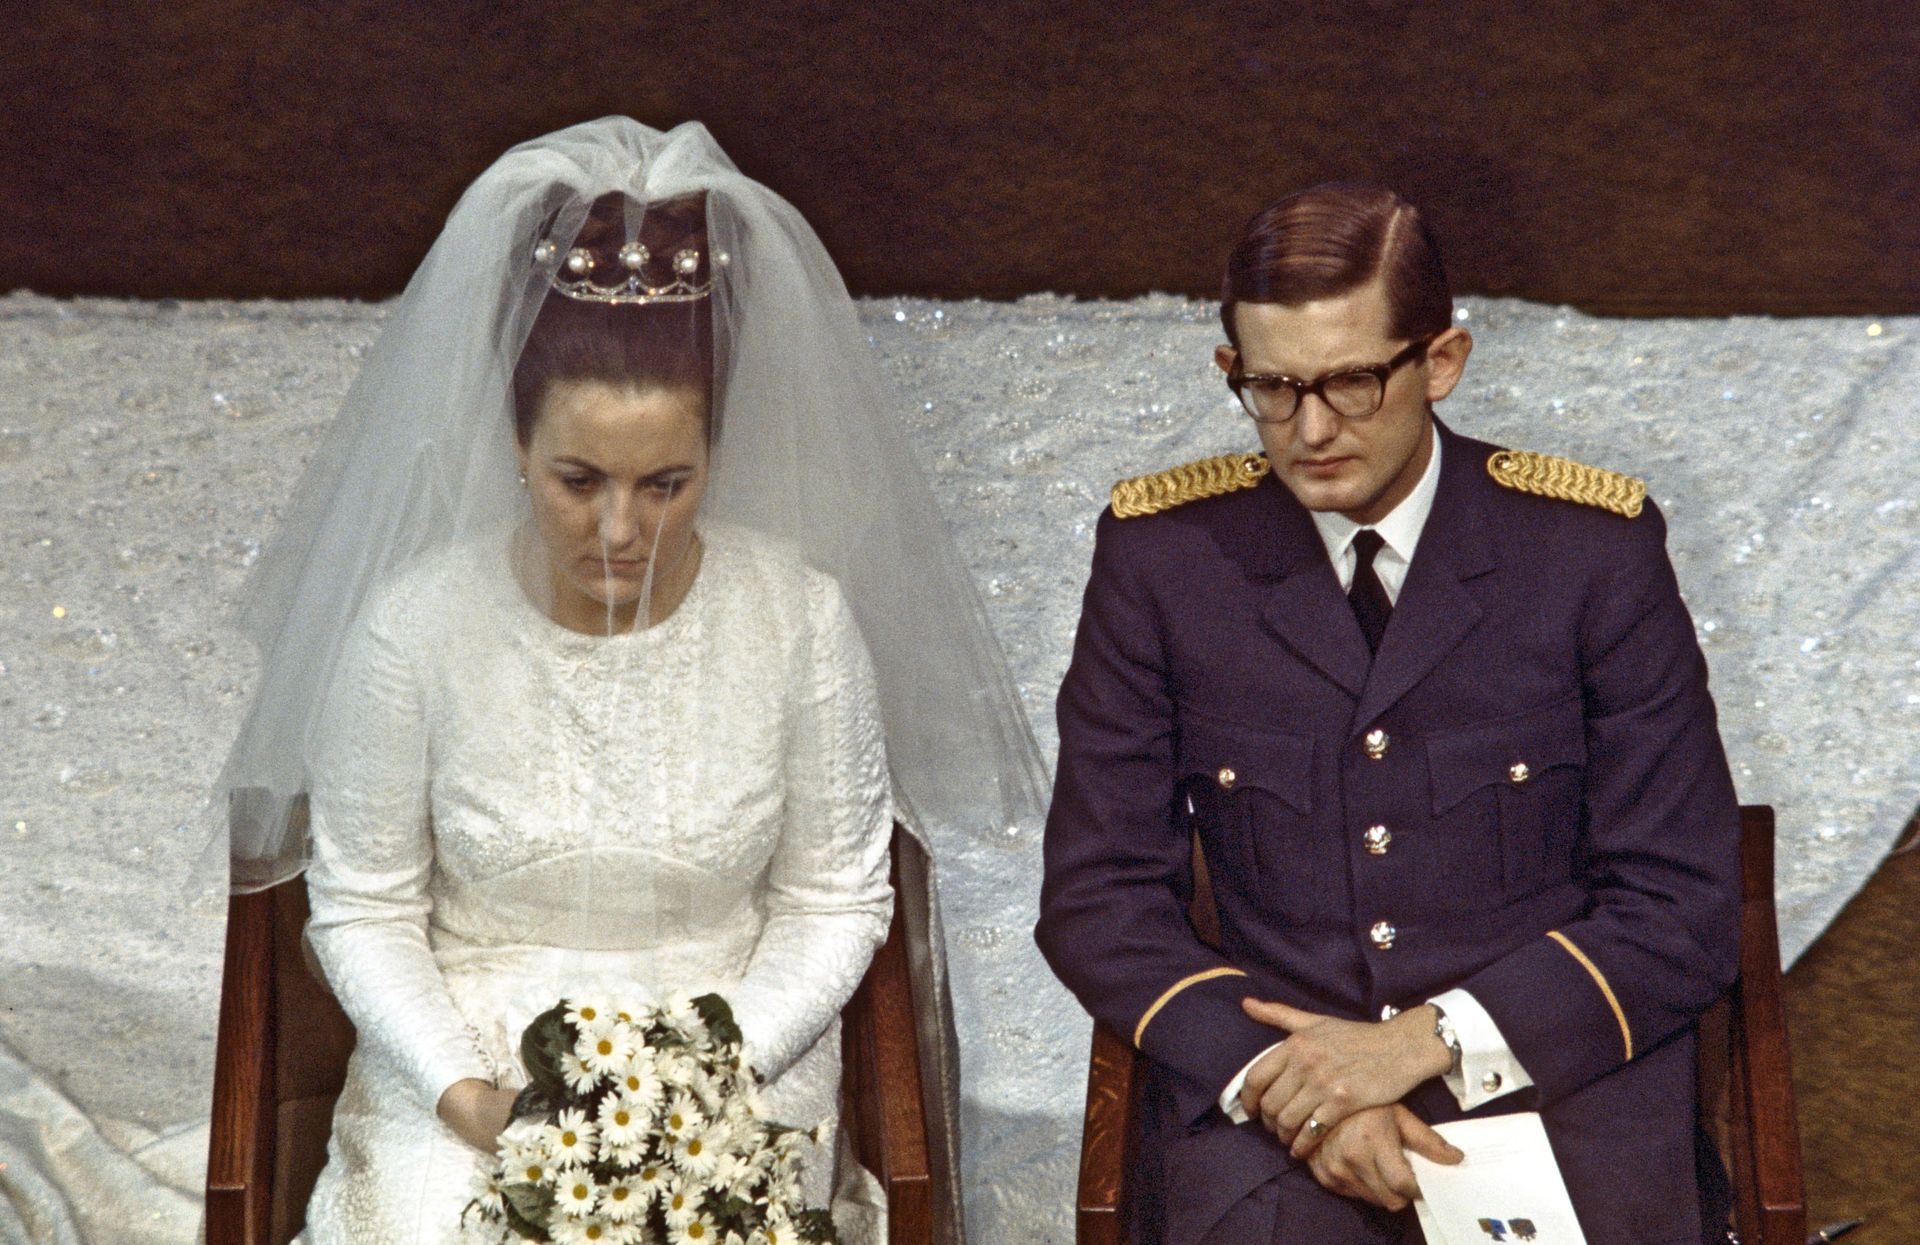 1967 - Het kerkelijk huwelijk van prinses Margriet en Pieter van Vollenhoven in de St. Jacobskerk in Den Haag